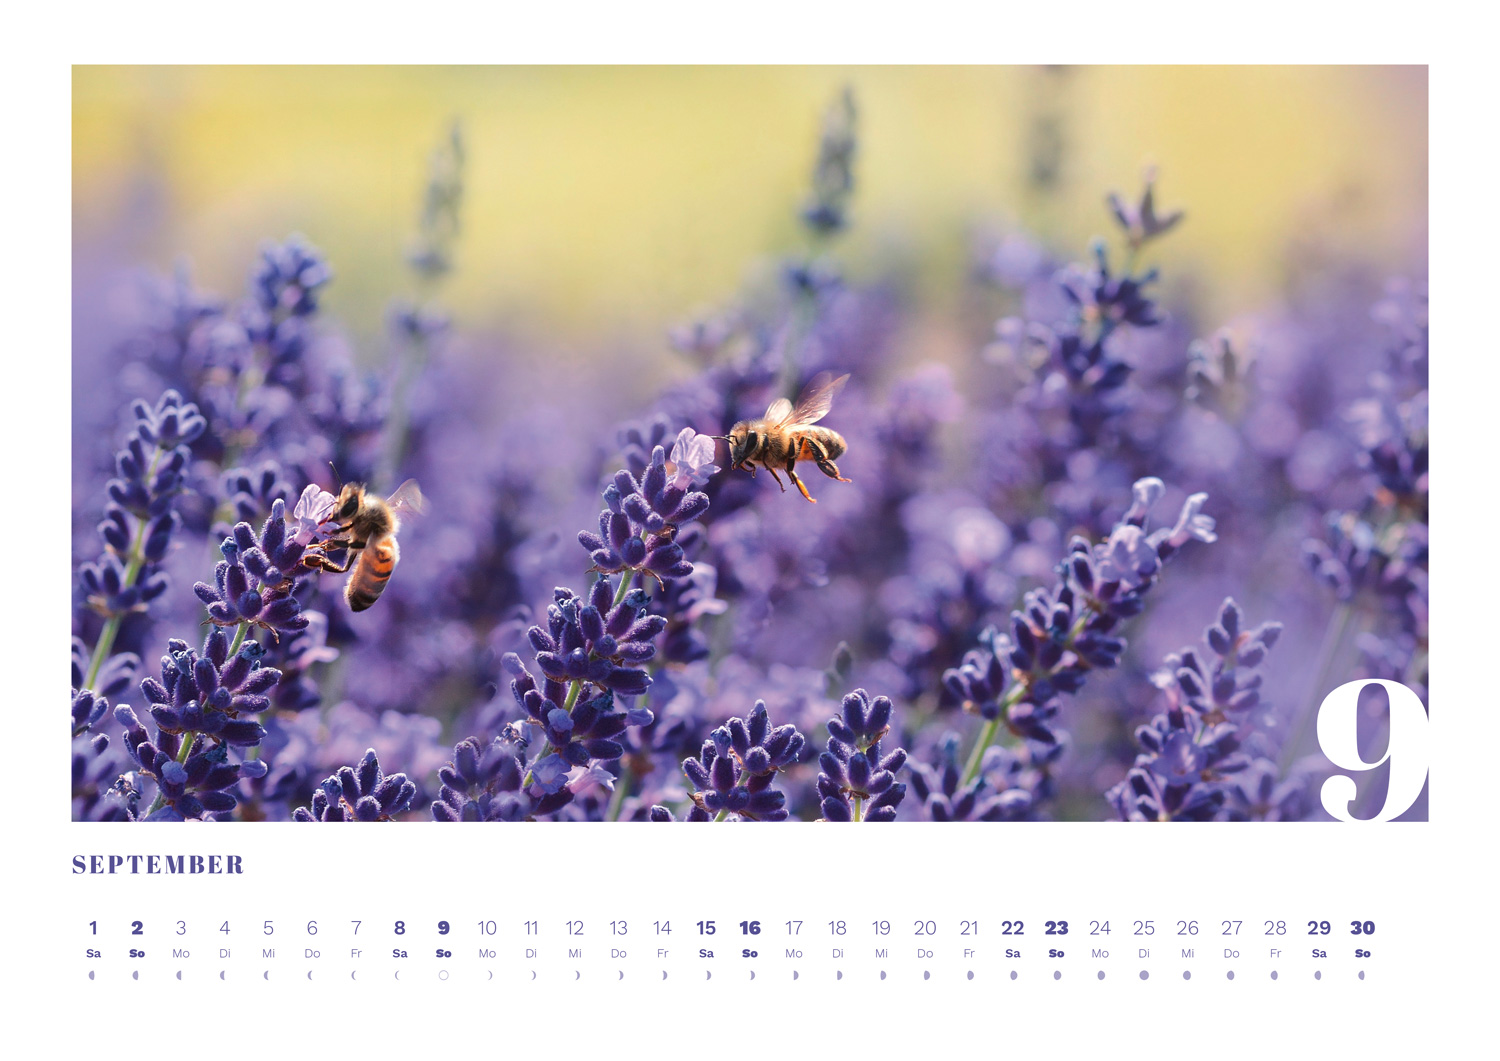 Calidario-PANTONE Calendar 2018 in September with Lavender Bee Motif